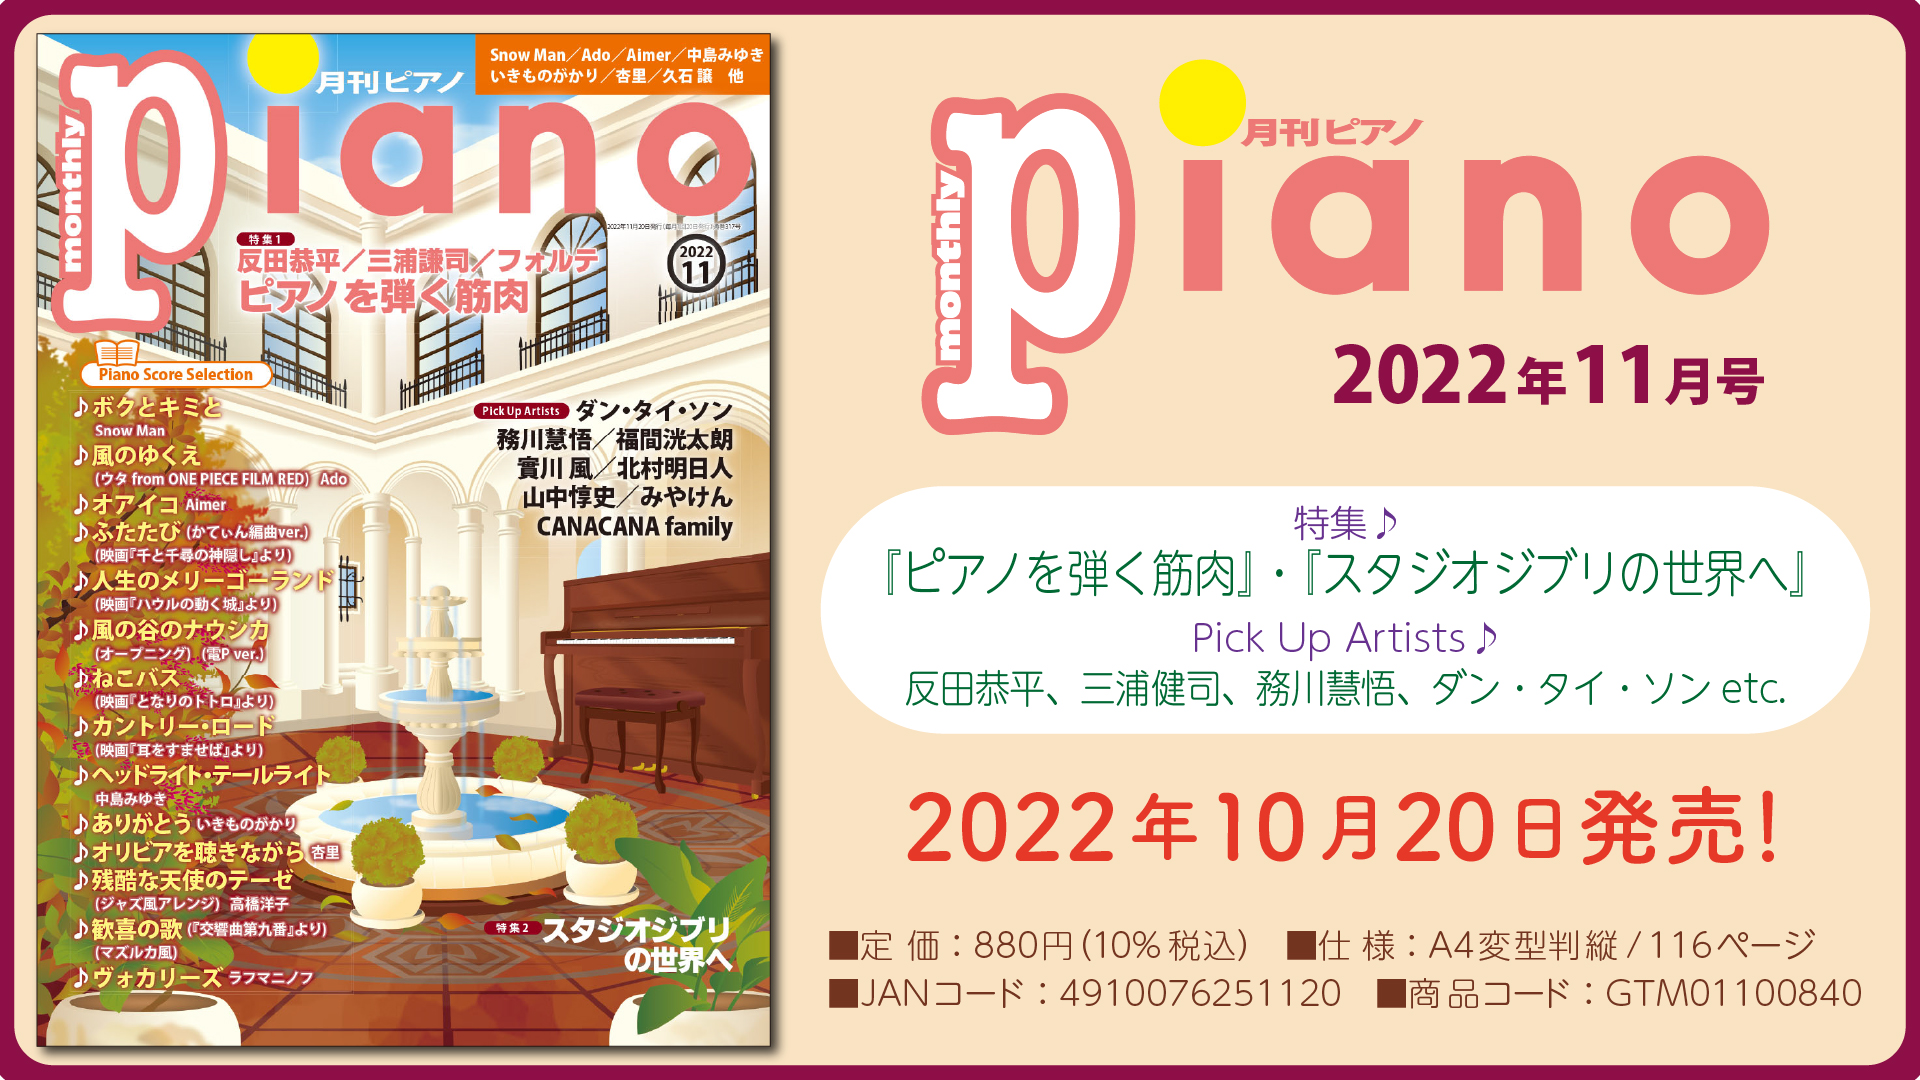 今月の特集は『ピアノを弾く筋肉』と『スタジオジブリの世界へ』「月刊ピアノ2022年11月号」 2022年10月20日発売 | NEWSCAST